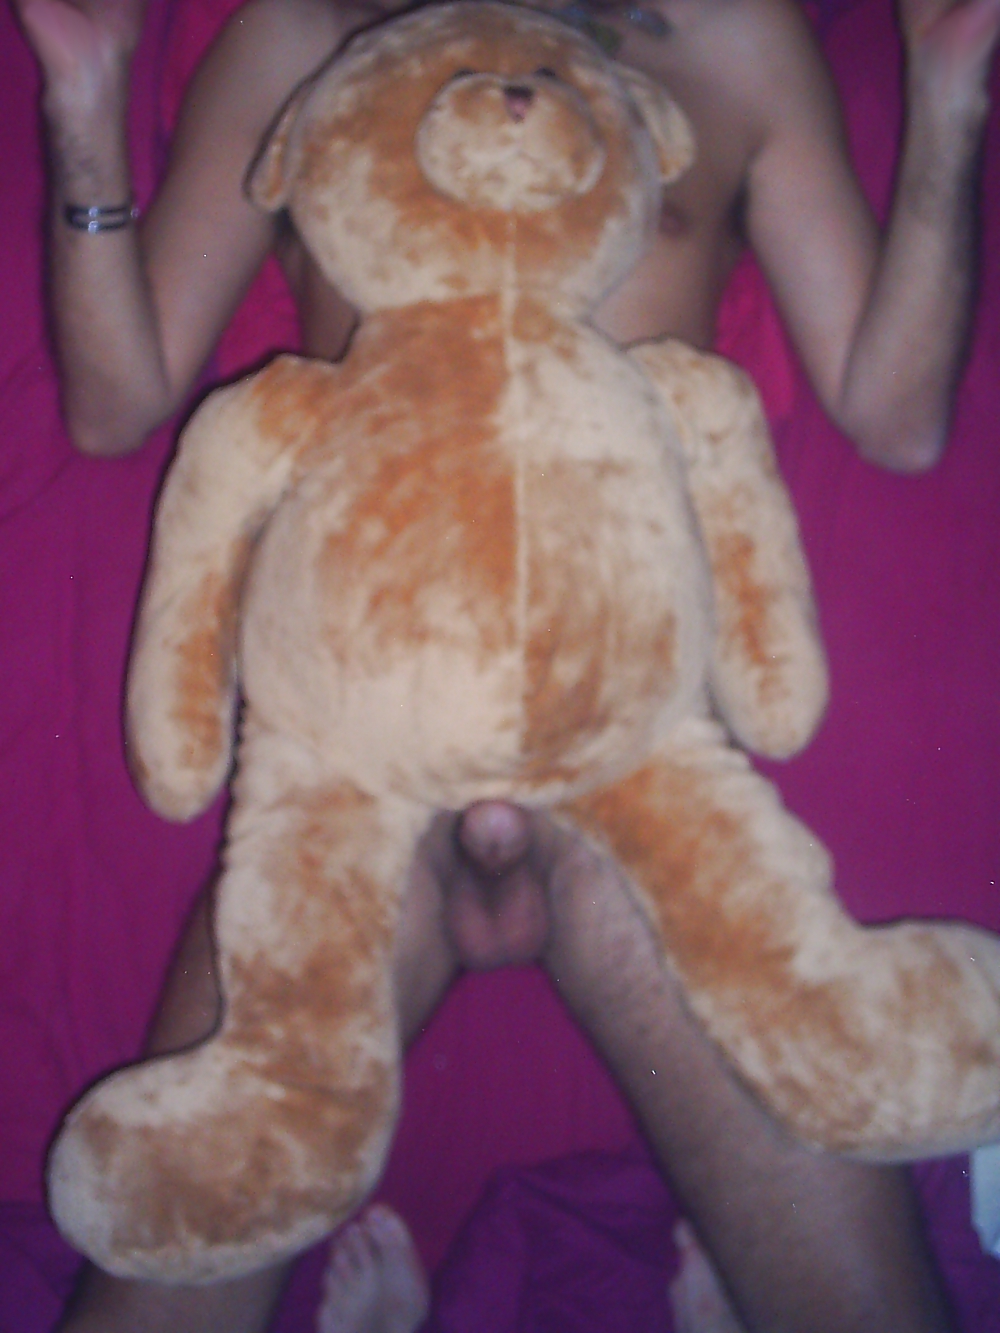 Me and my Teddy Undergo